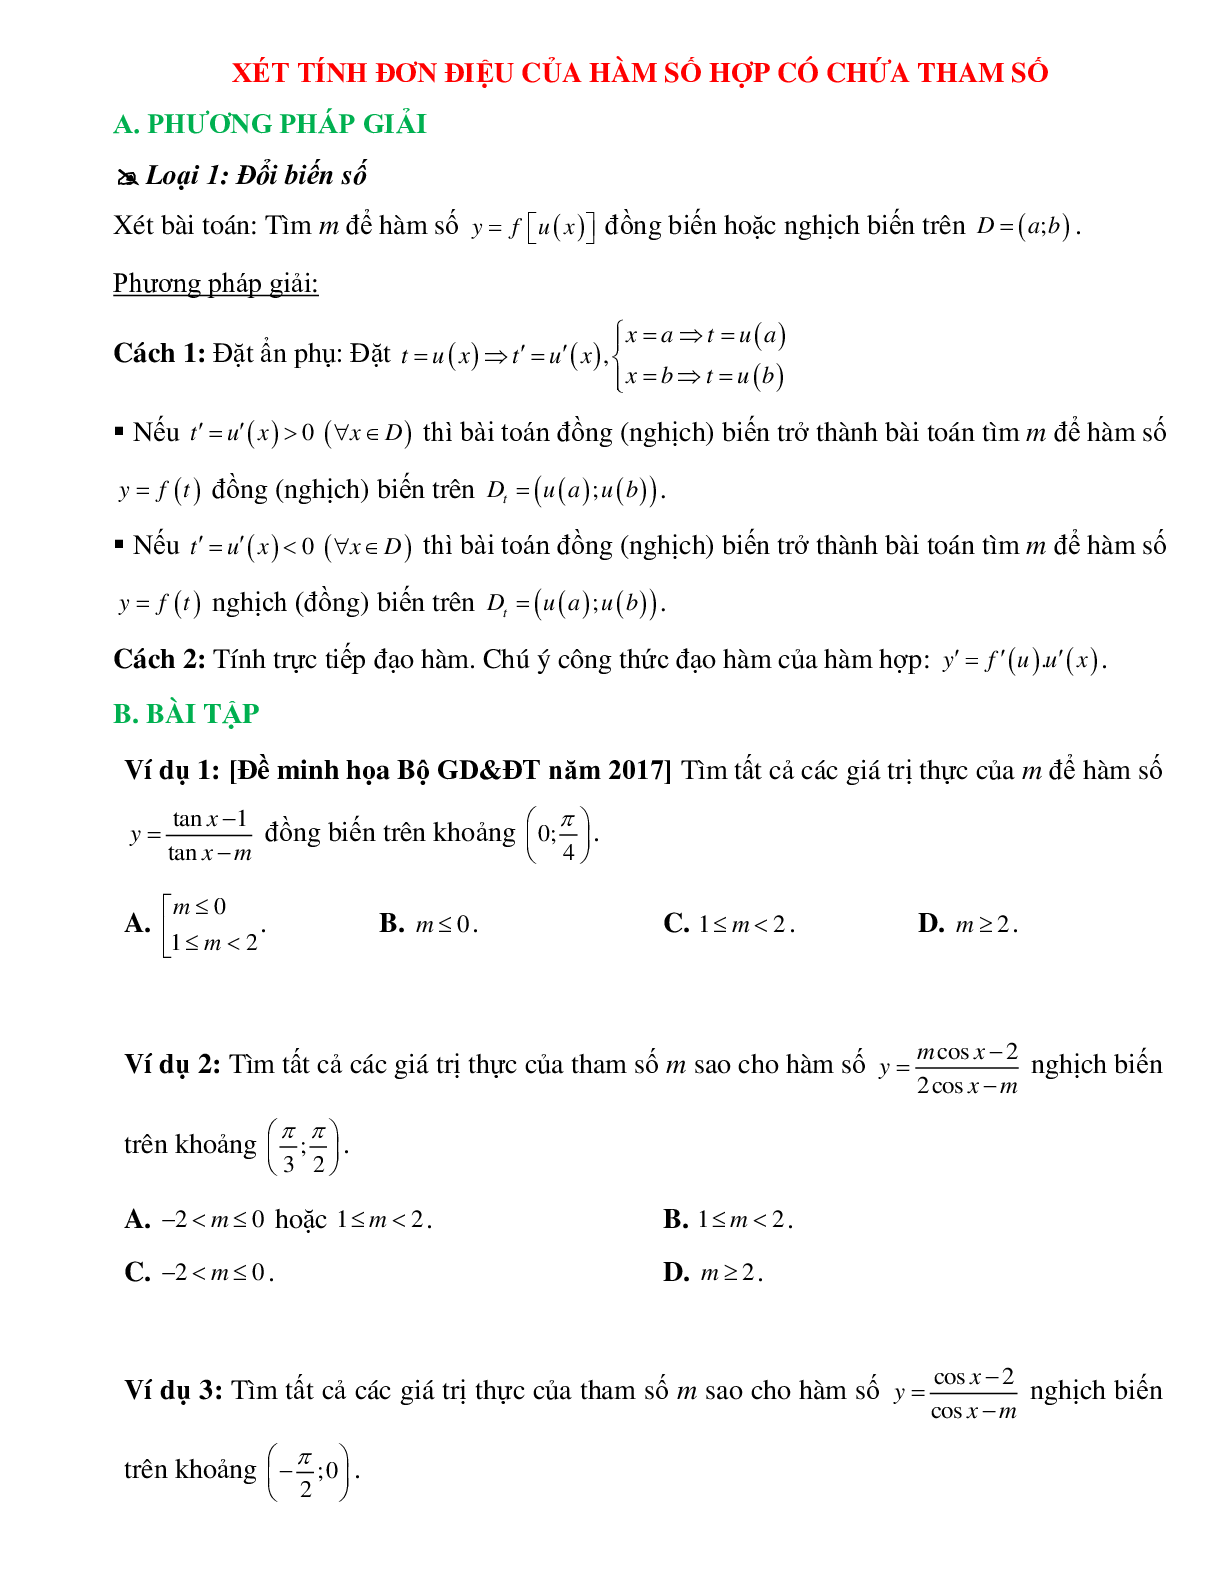 Xét tính đơn điệu của hàm số hợp có chứa tham số (trang 1)